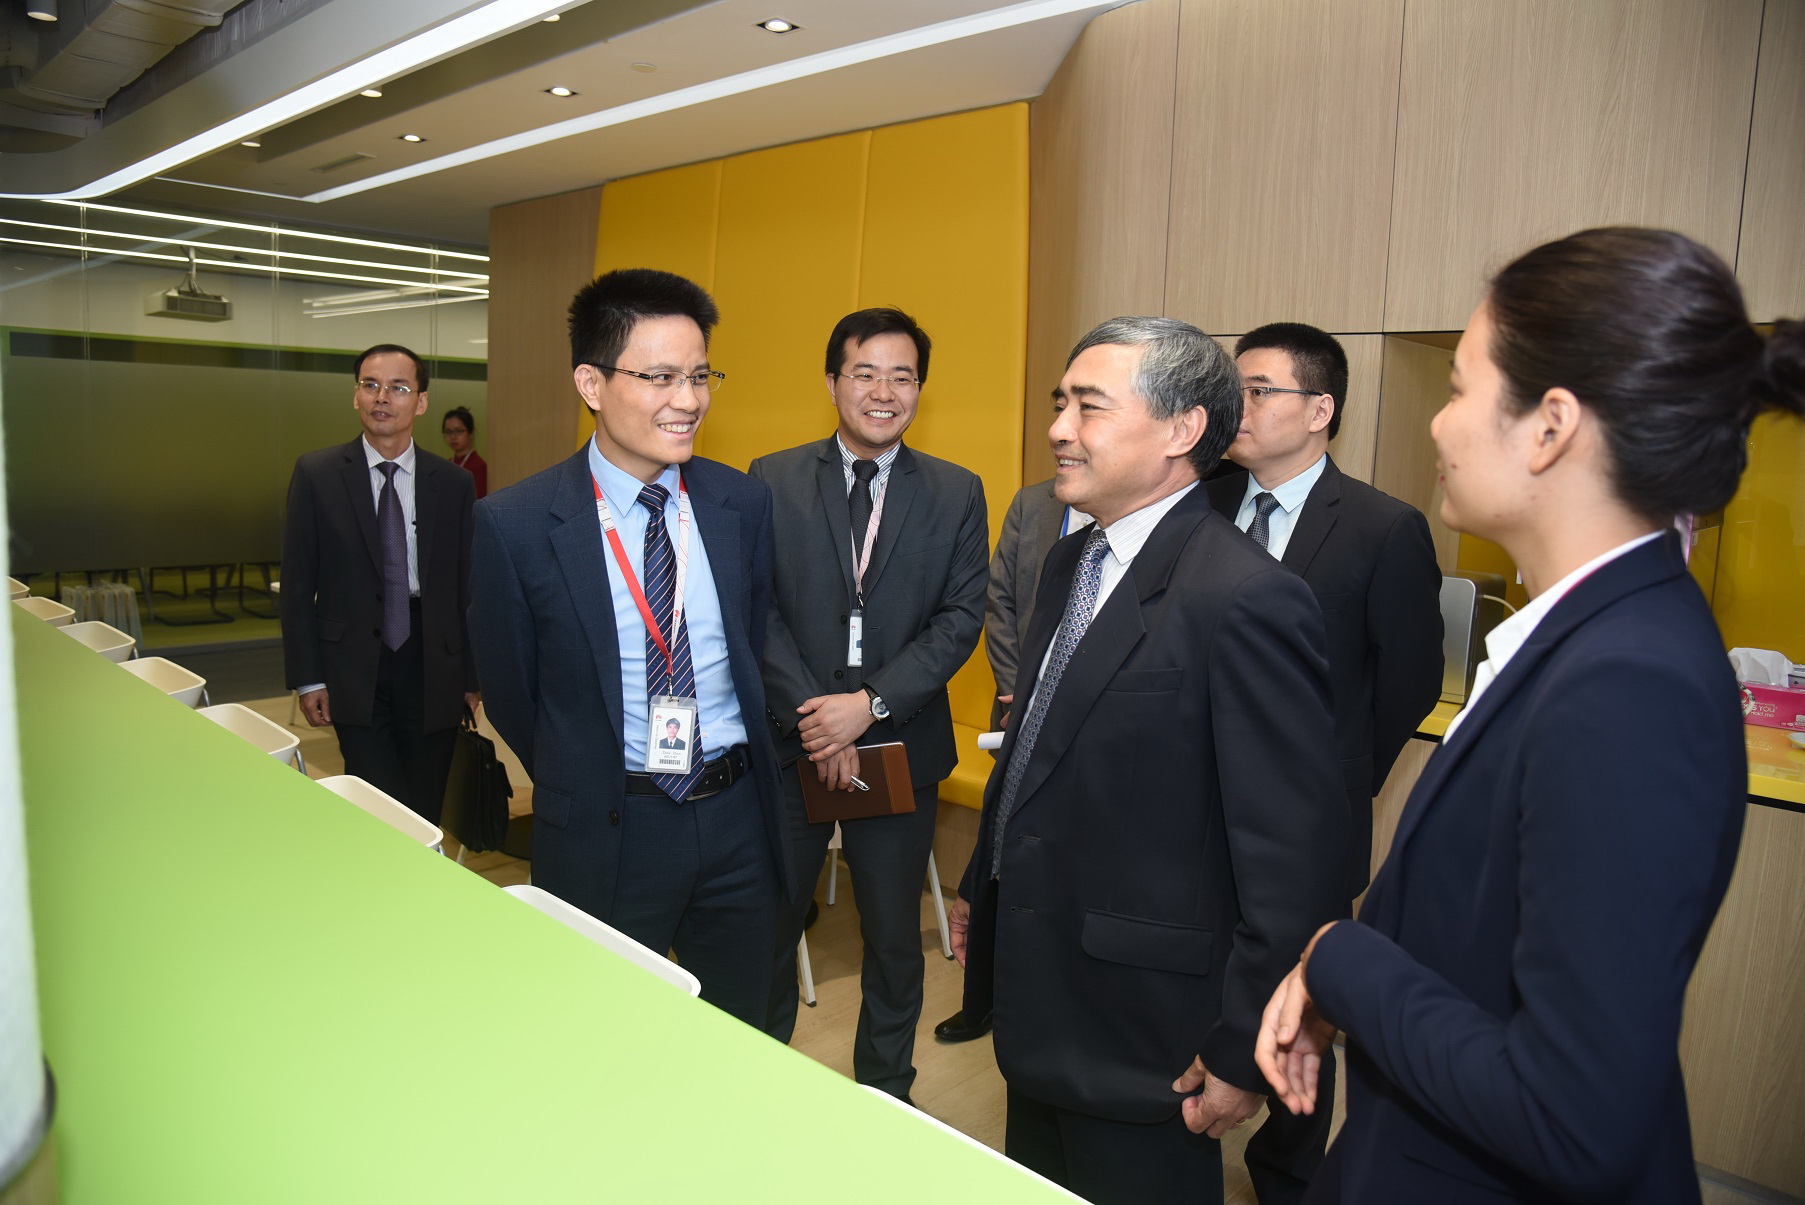 Thứ trưởng Nguyễn Minh Hồng thăm văn phòng xanh được thiết kế theo tiêu chuẩn quốc tế hiện đại của Công ty Huawei Việt Nam.​